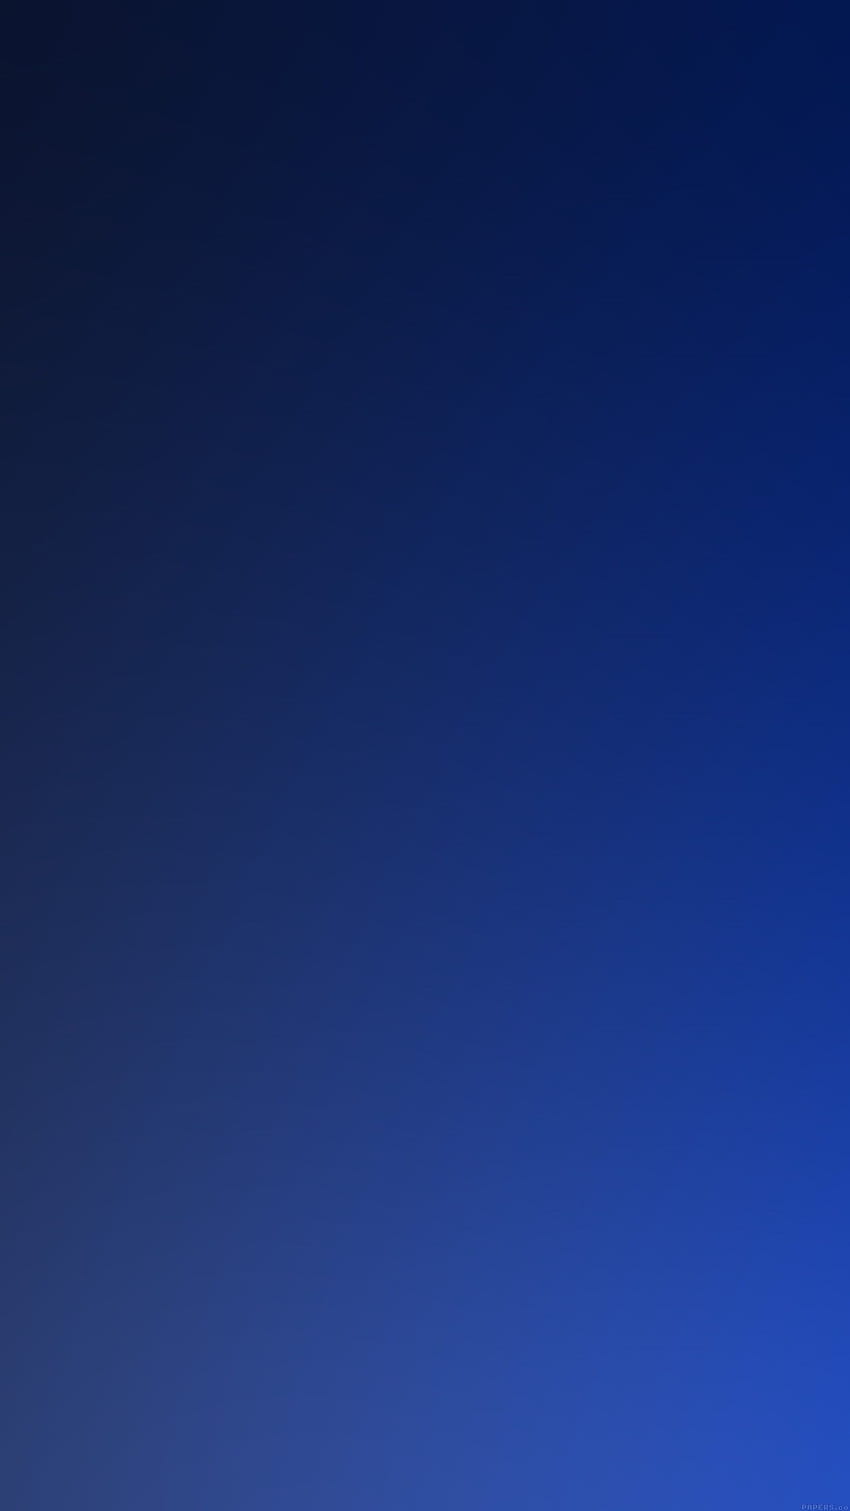 iPhone7papers - desenfoque de gradación de océano azul oscuro fondo de pantalla del teléfono